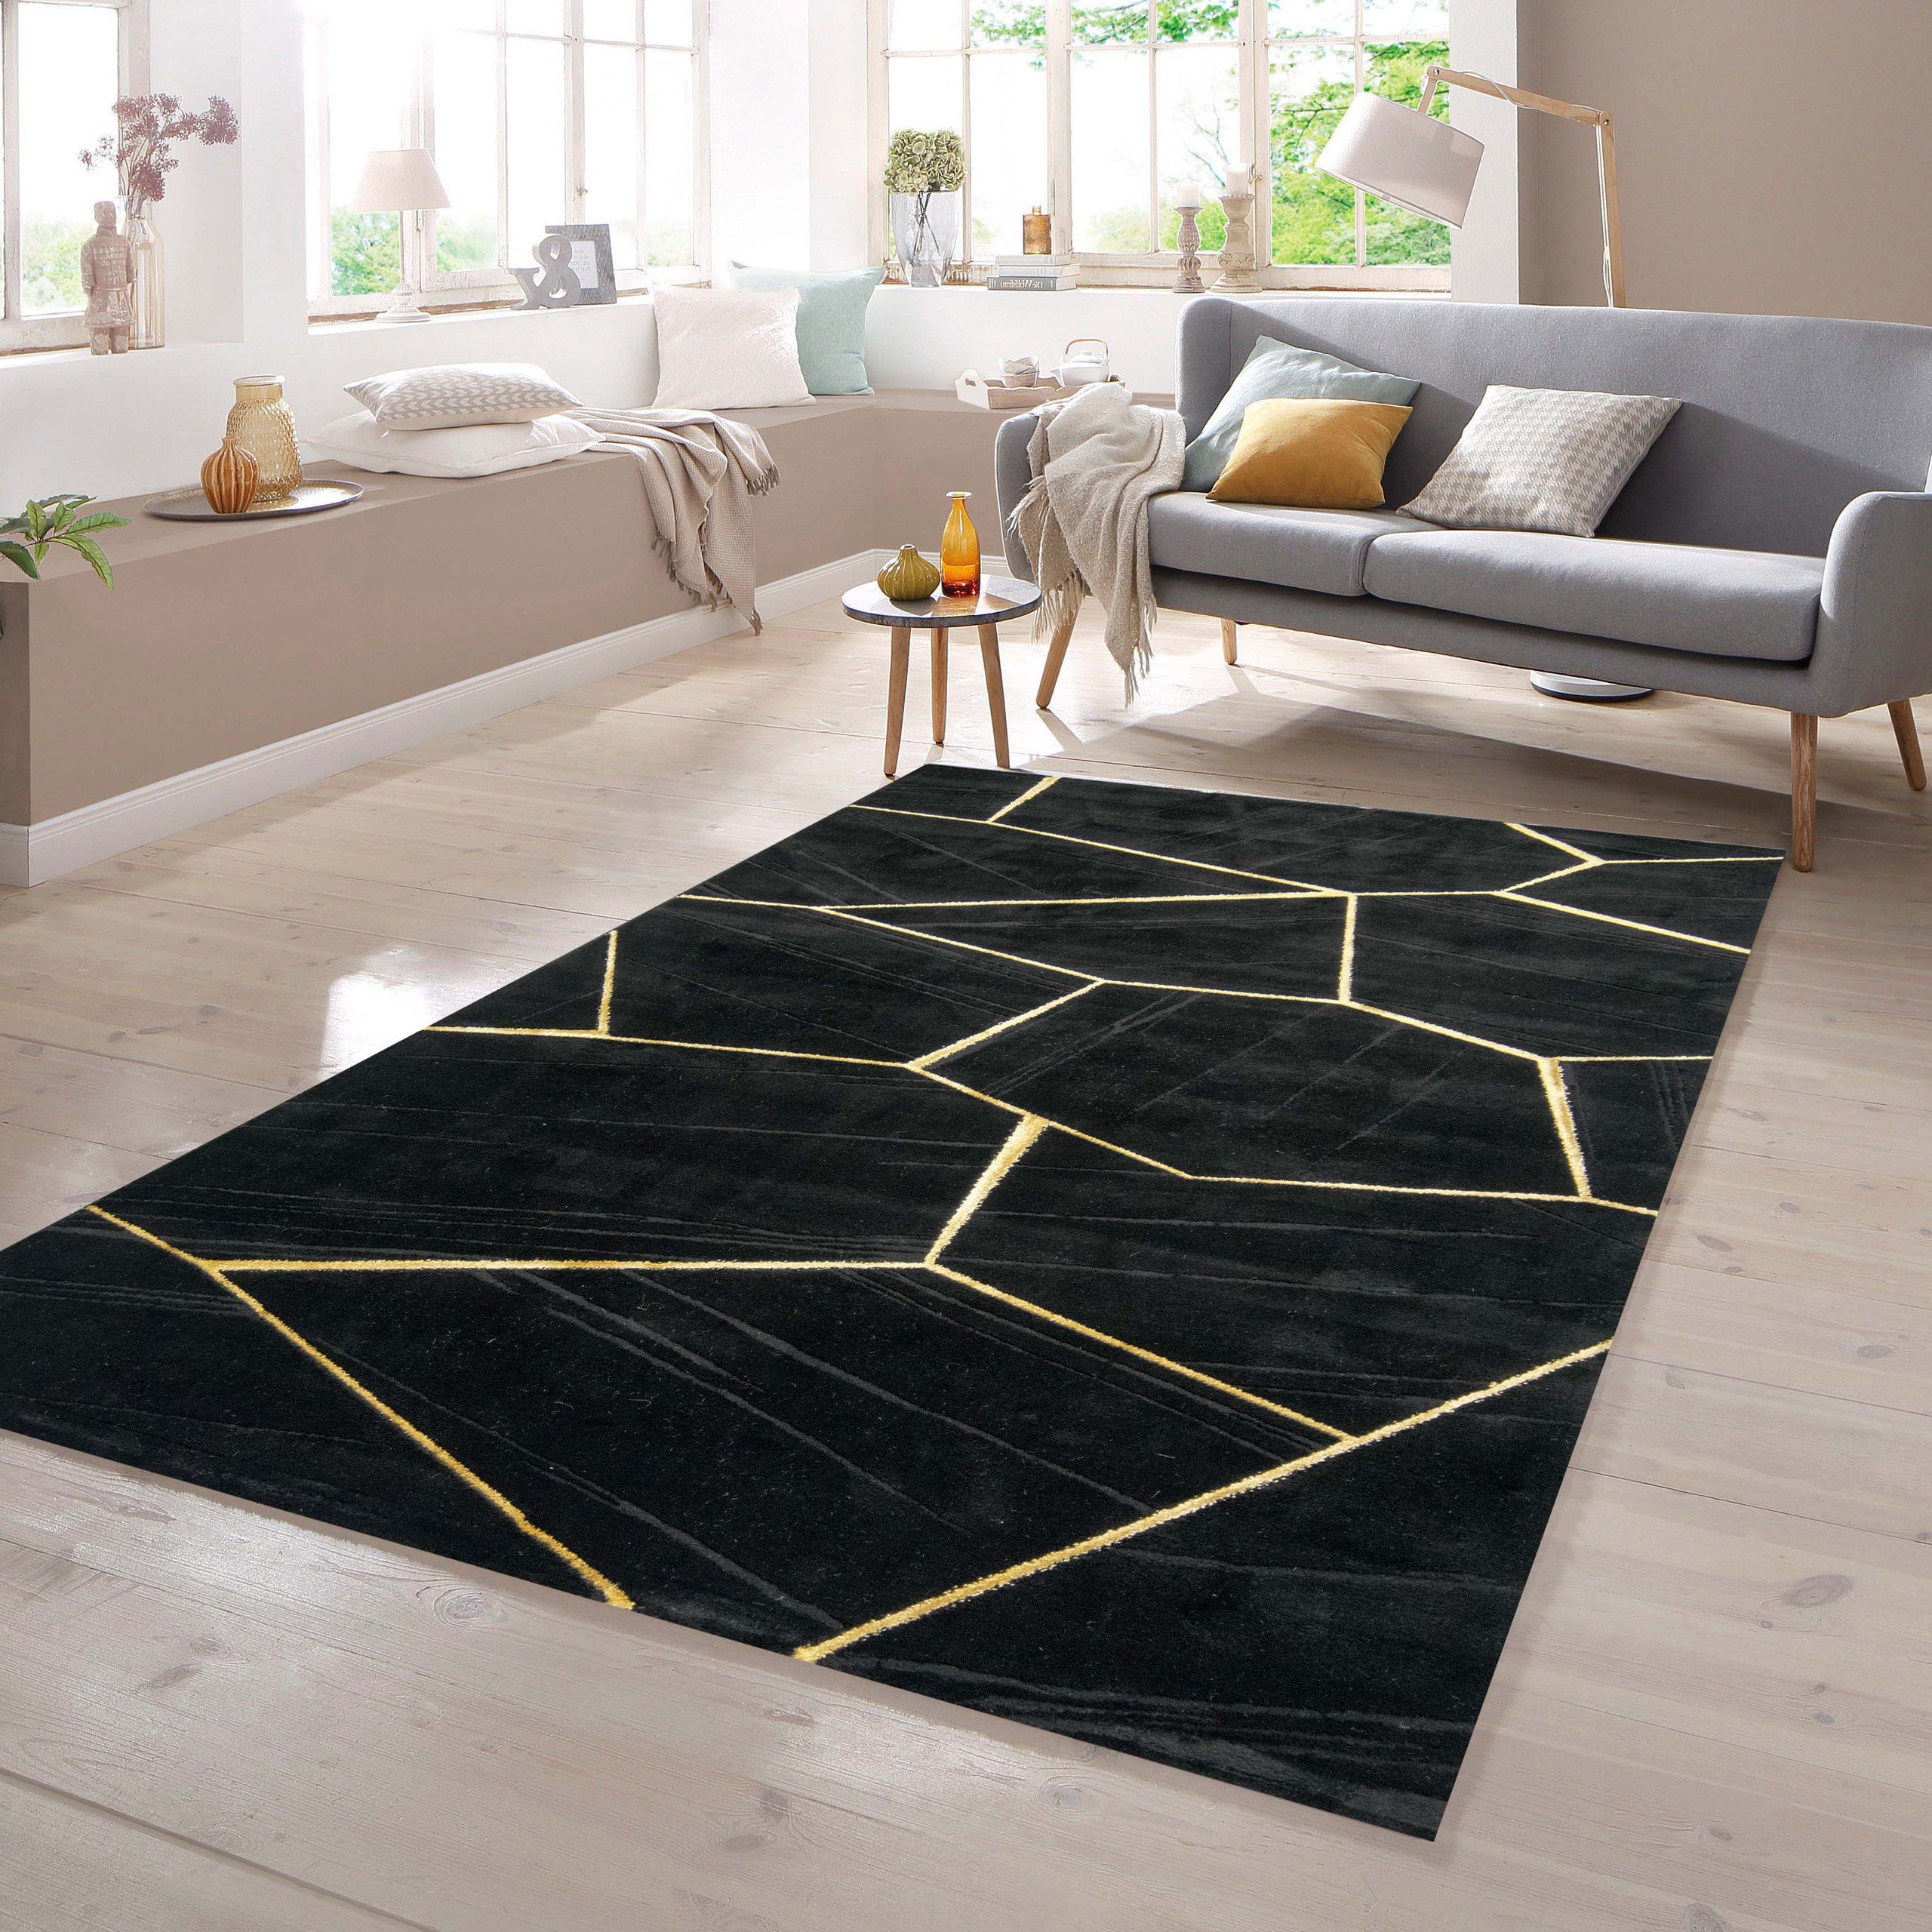 Teppich Wohnzimmerteppich geometrisches Muster in schwarz gold, TeppichHome24, rechteckig